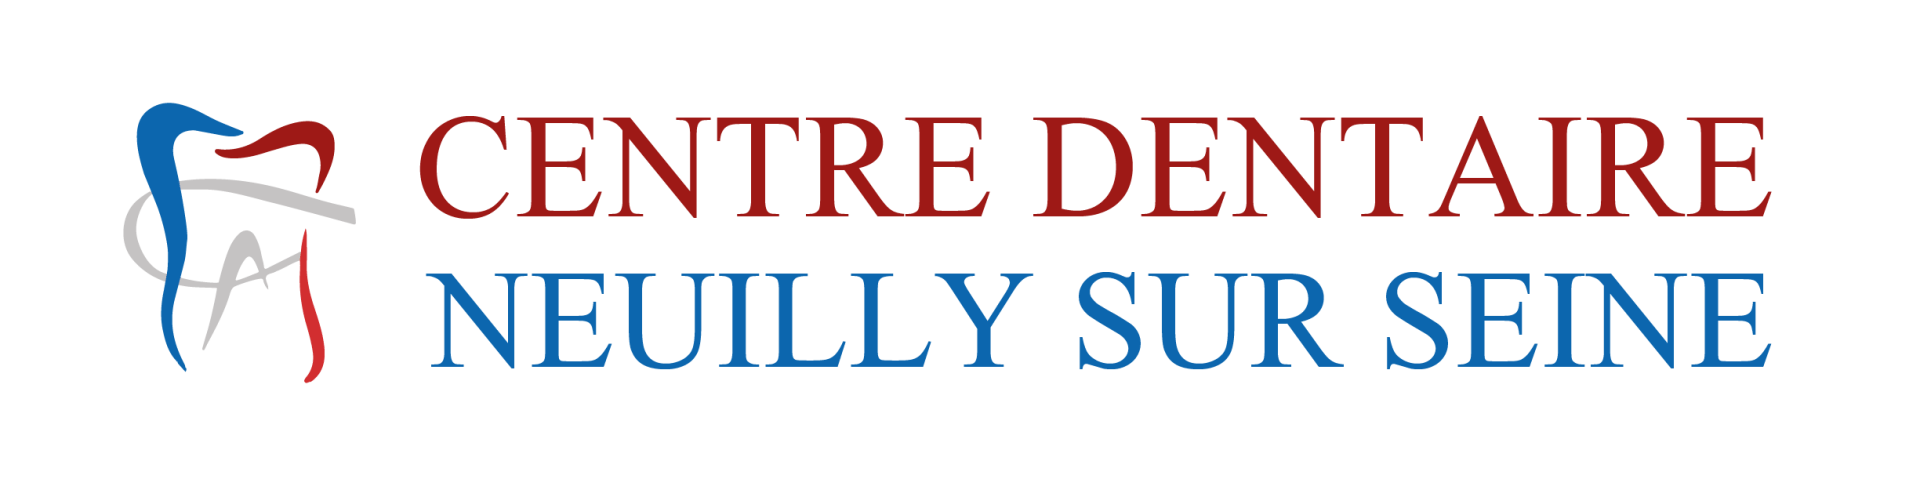 centre-dentaire-neuilly-sur-seine-logo